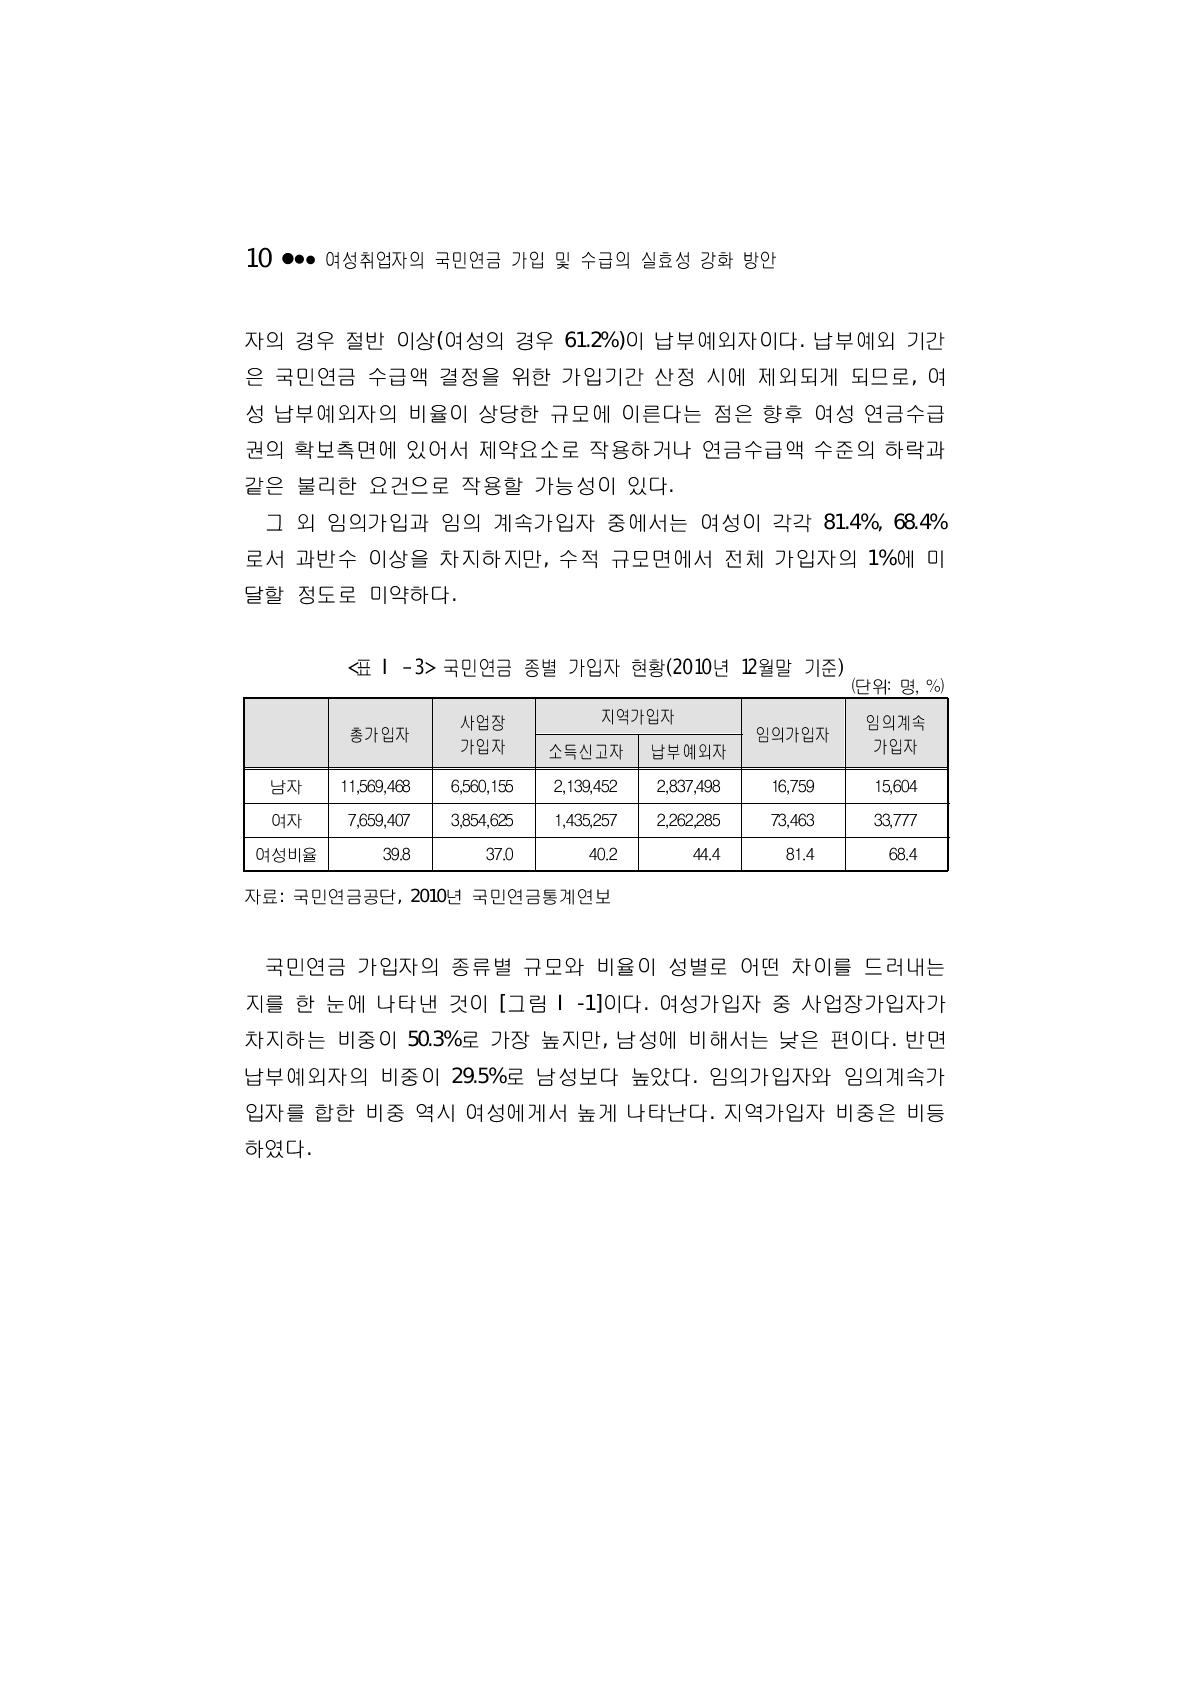 국민연금 종별 가입자 현황(2010년 12월말 기준)